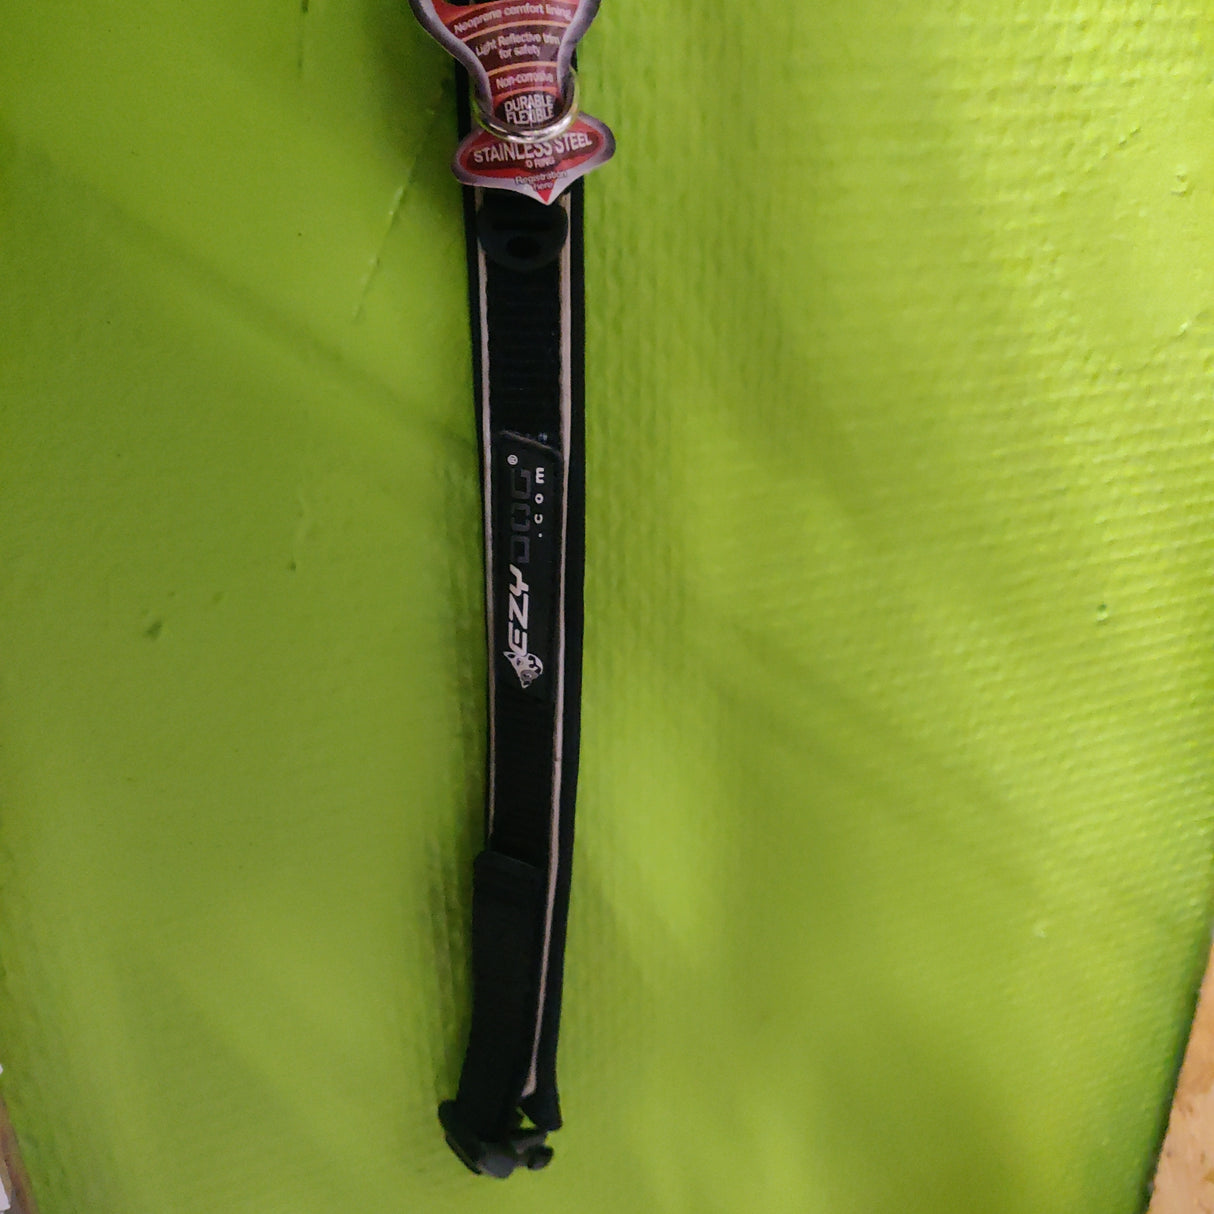 Et EzyDog halsbånd - Sort, et sort og rødt hundehalsbånd, hængende på en grøn væg.